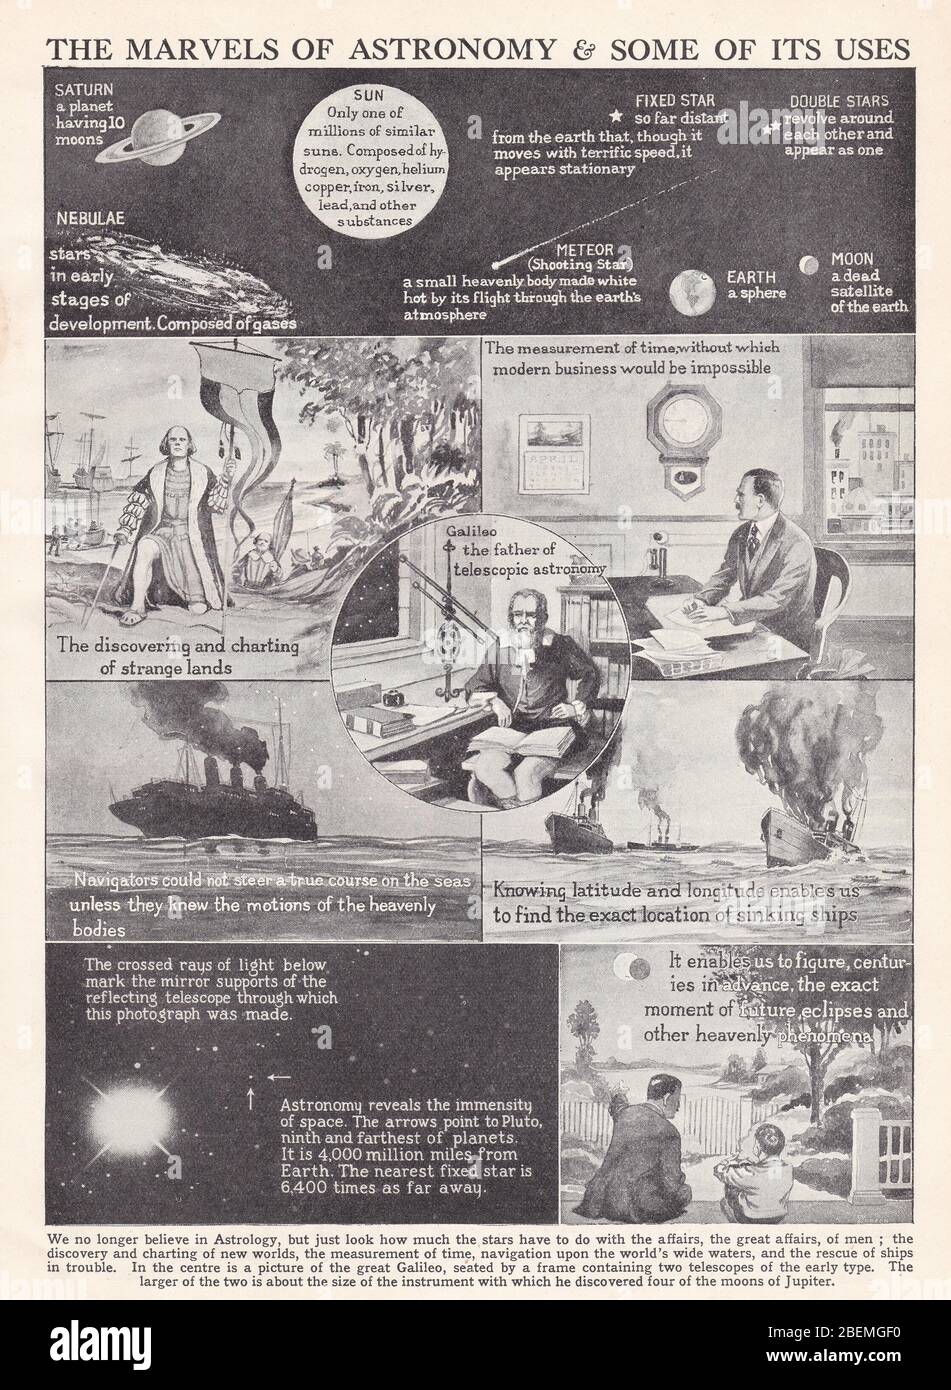 Illustrazioni vintage degli anni '30 delle meraviglie dell'Astronomia e di alcuni suoi usi. Foto Stock